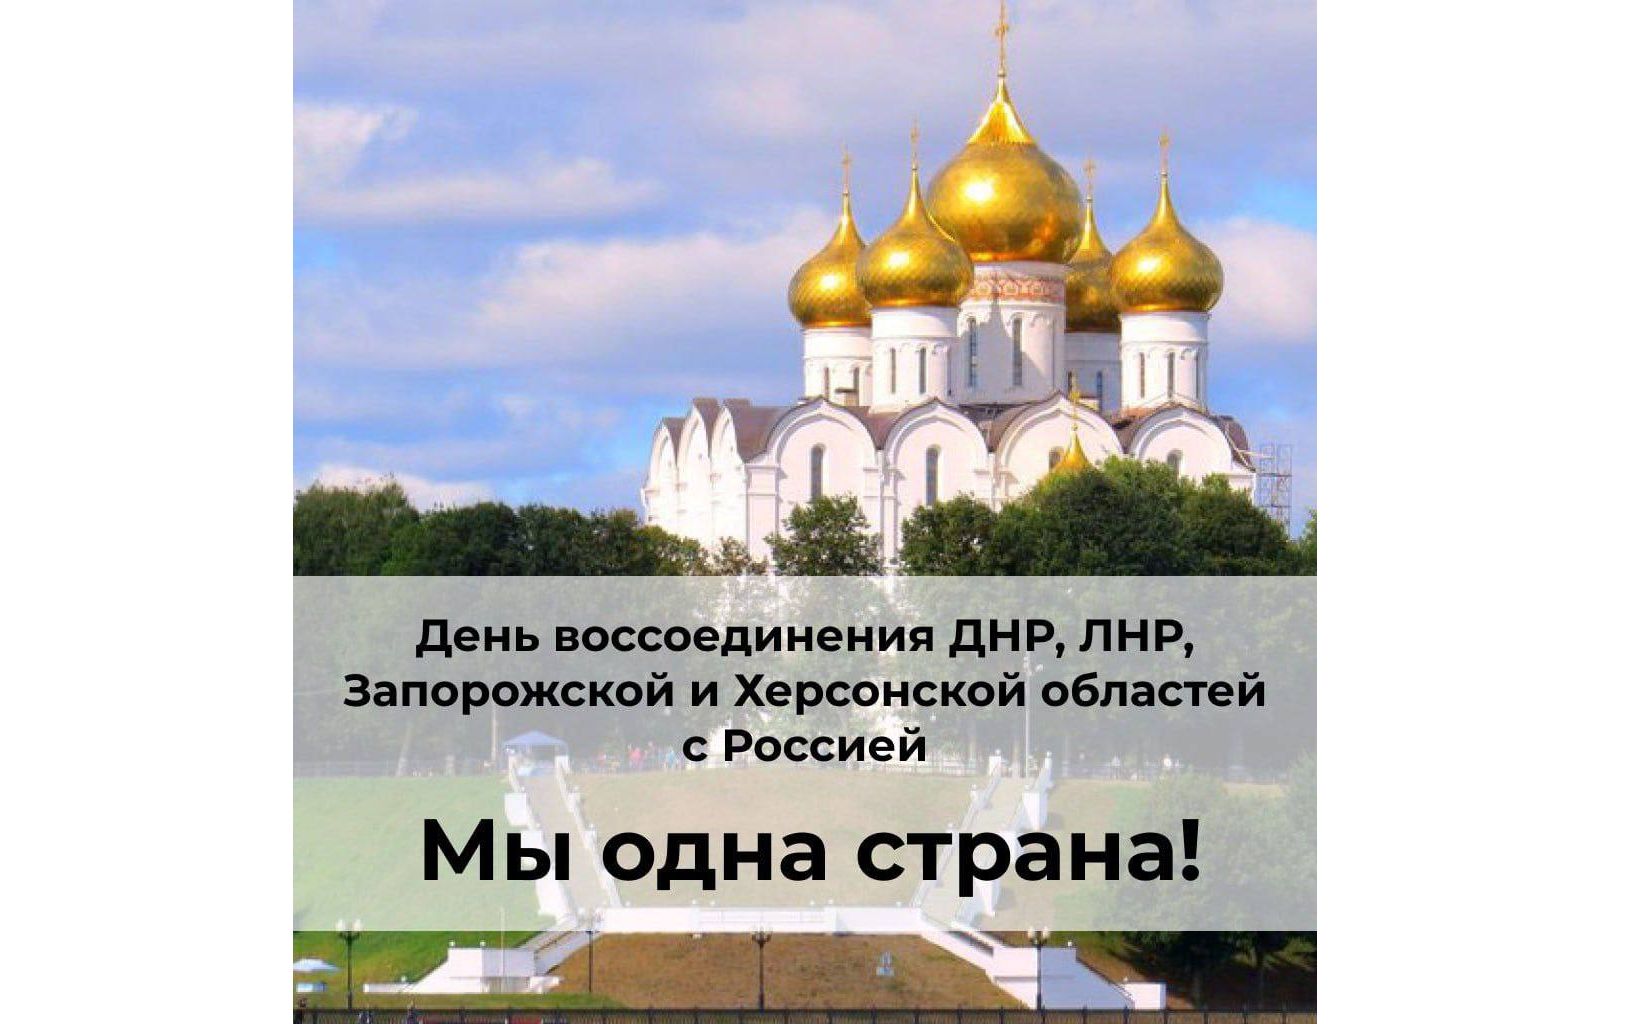 Михаил Евраев поздравил жителей воссоединившихся с Россией регионов с годовщиной